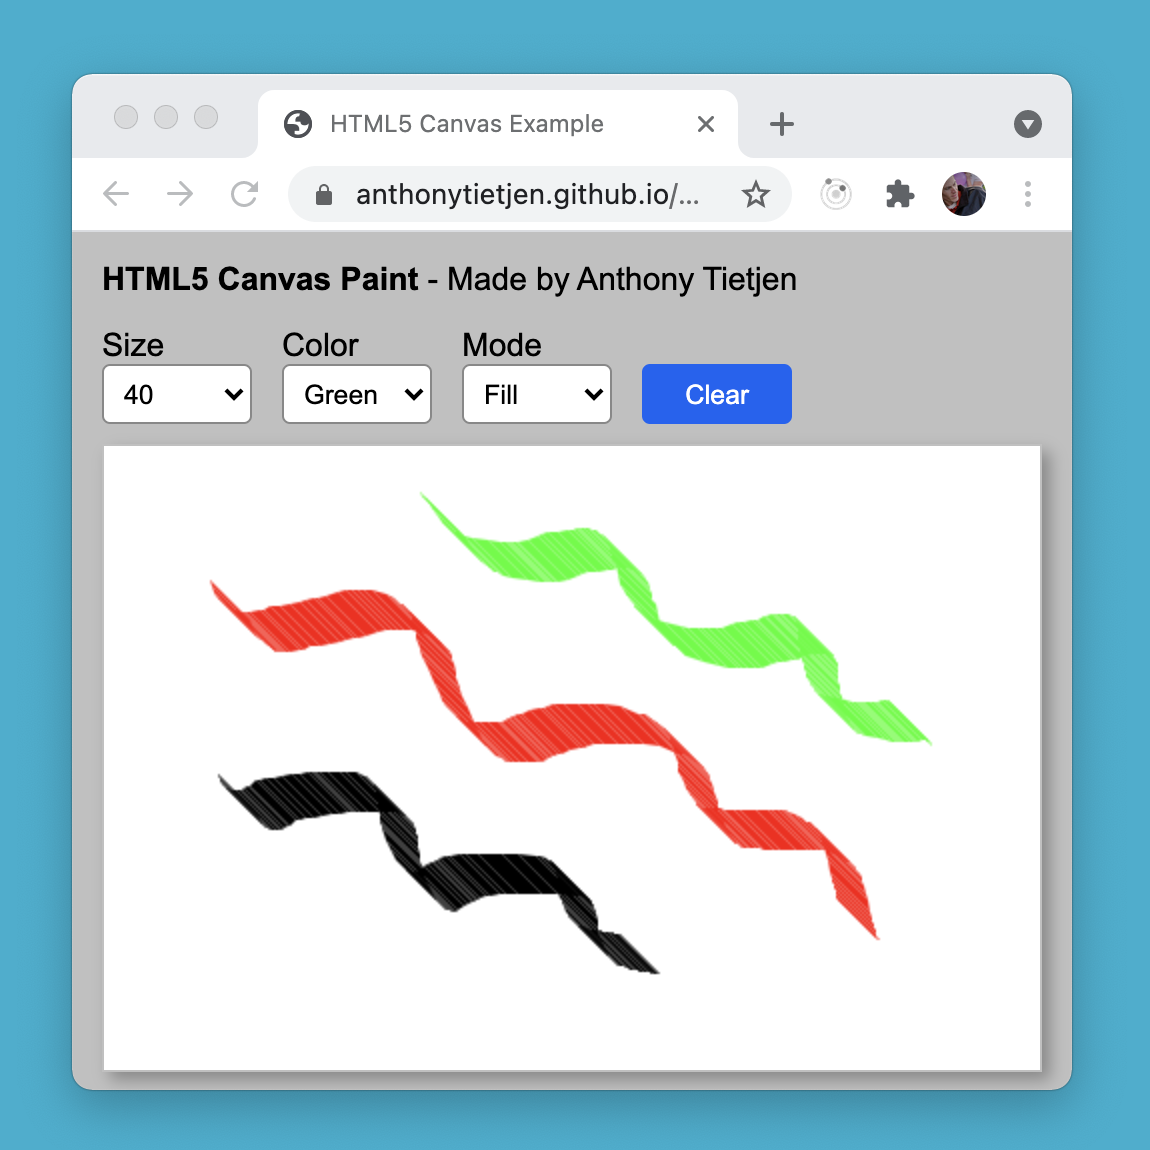 HTML5 Canvas Paint